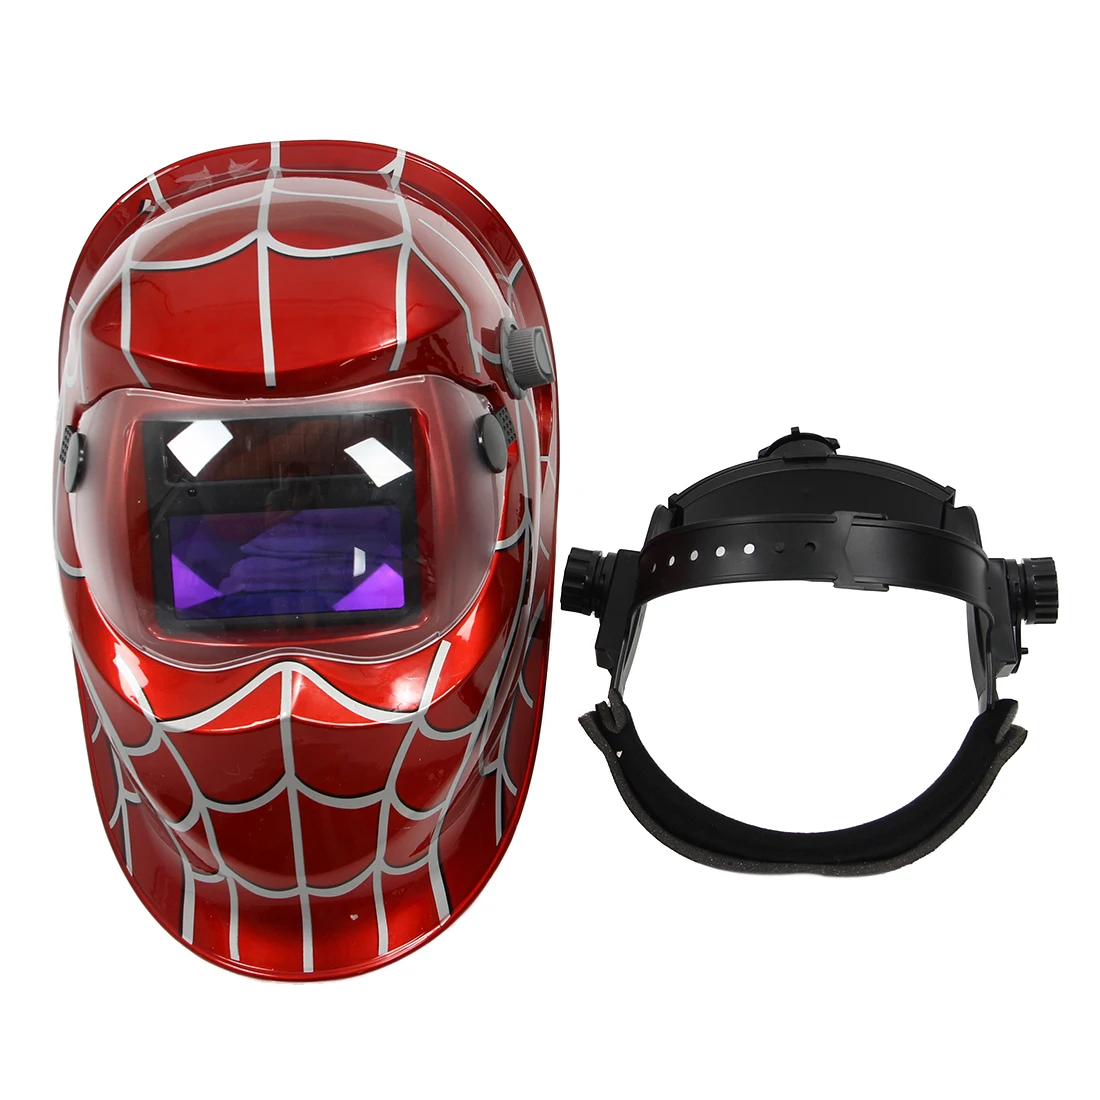 Red Welding Mask Auto Darkening Hand-Held Pro Welder Protective Welders gear 